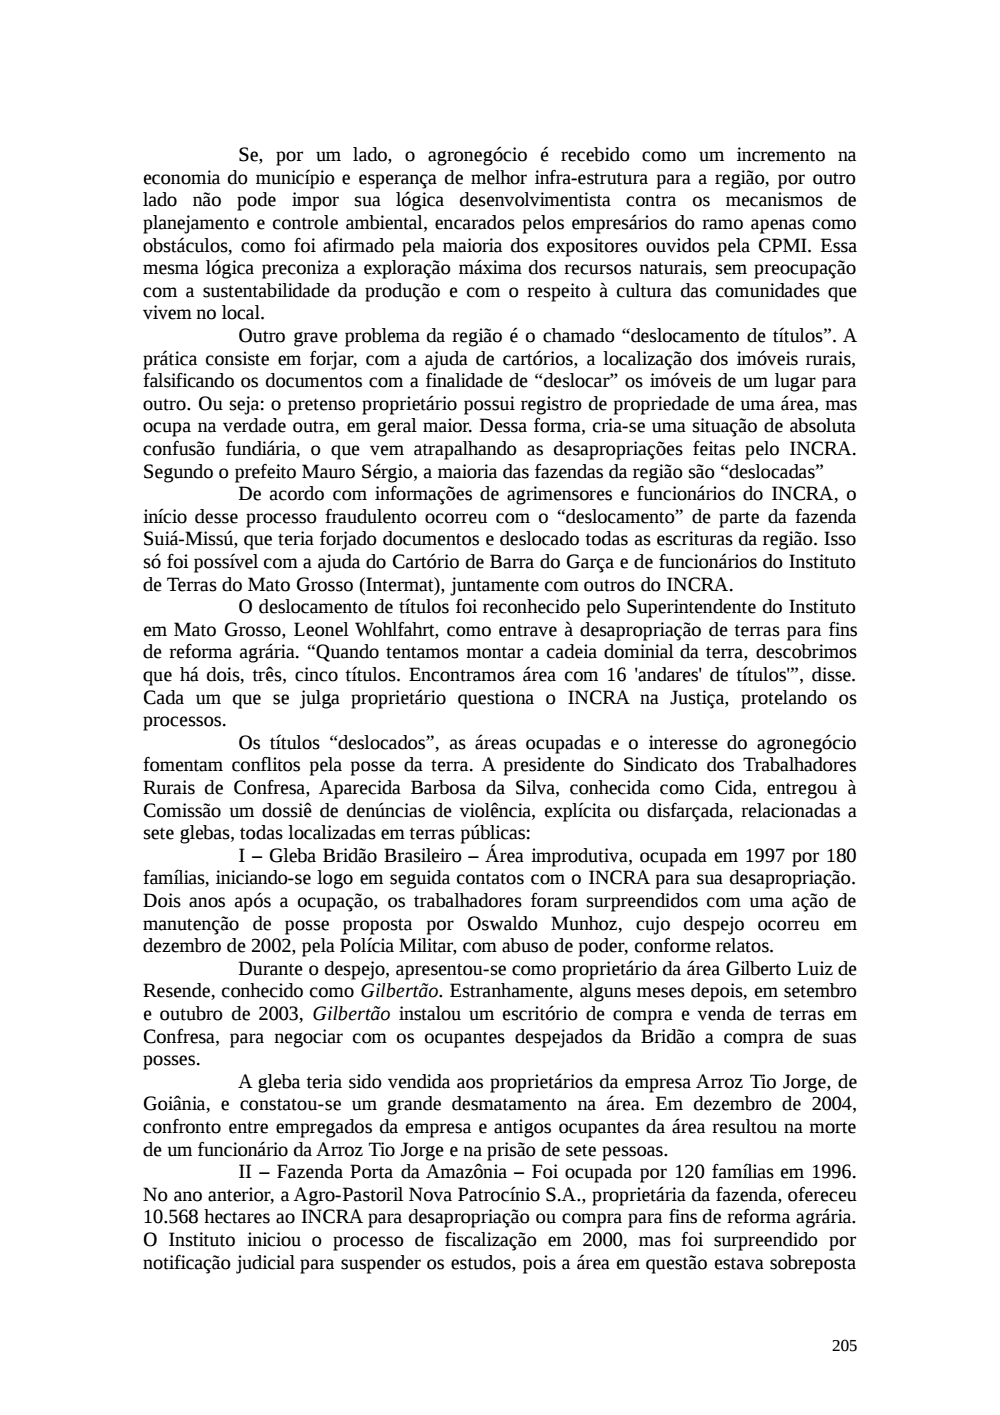 Page 205 from Relatório final da comissão